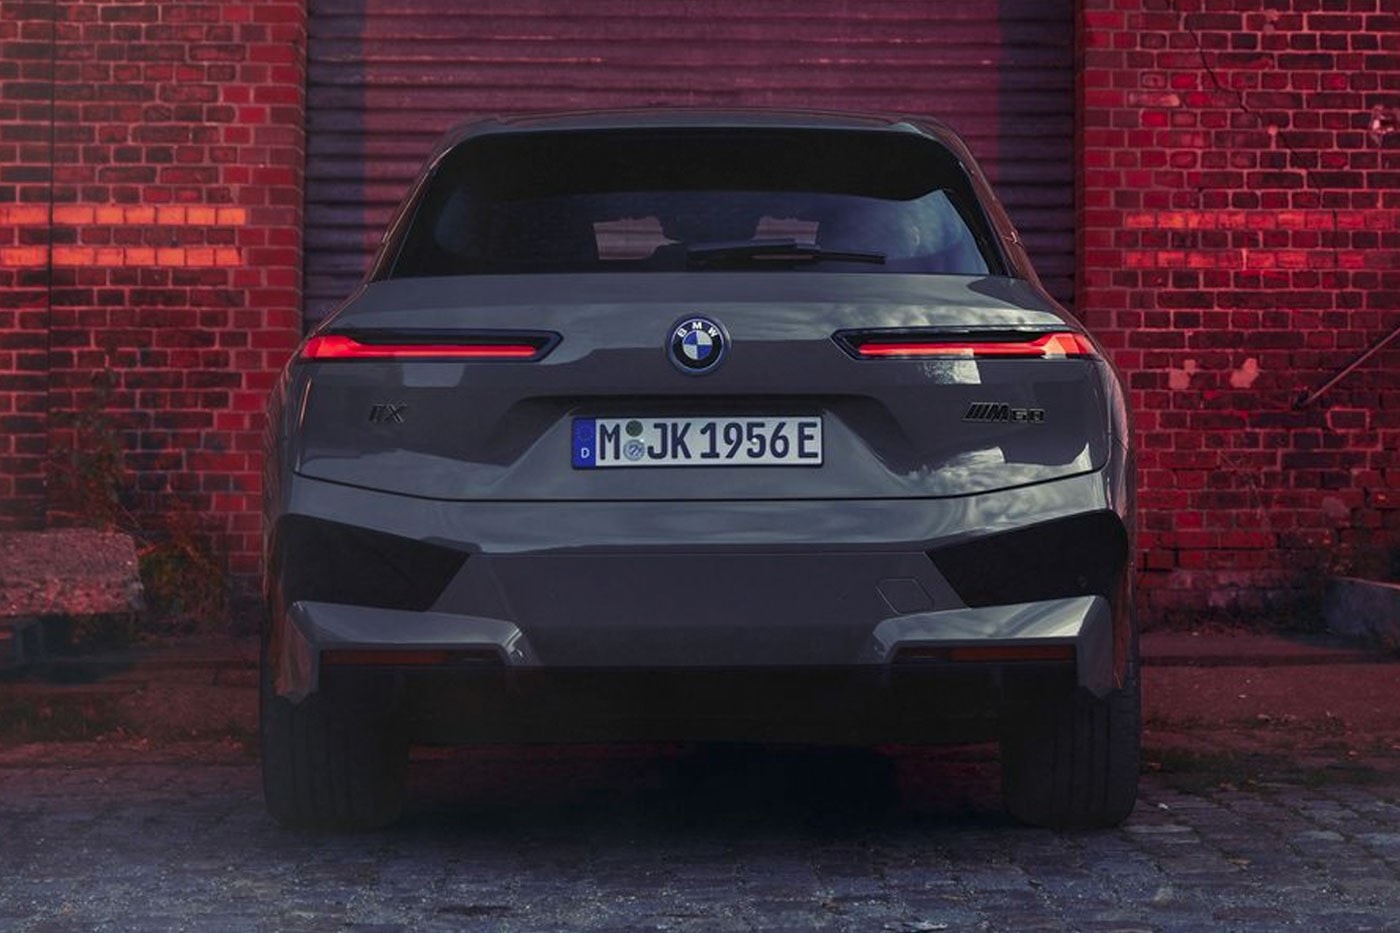 BMW 揭示全新電能 SUV 車型 iX M60